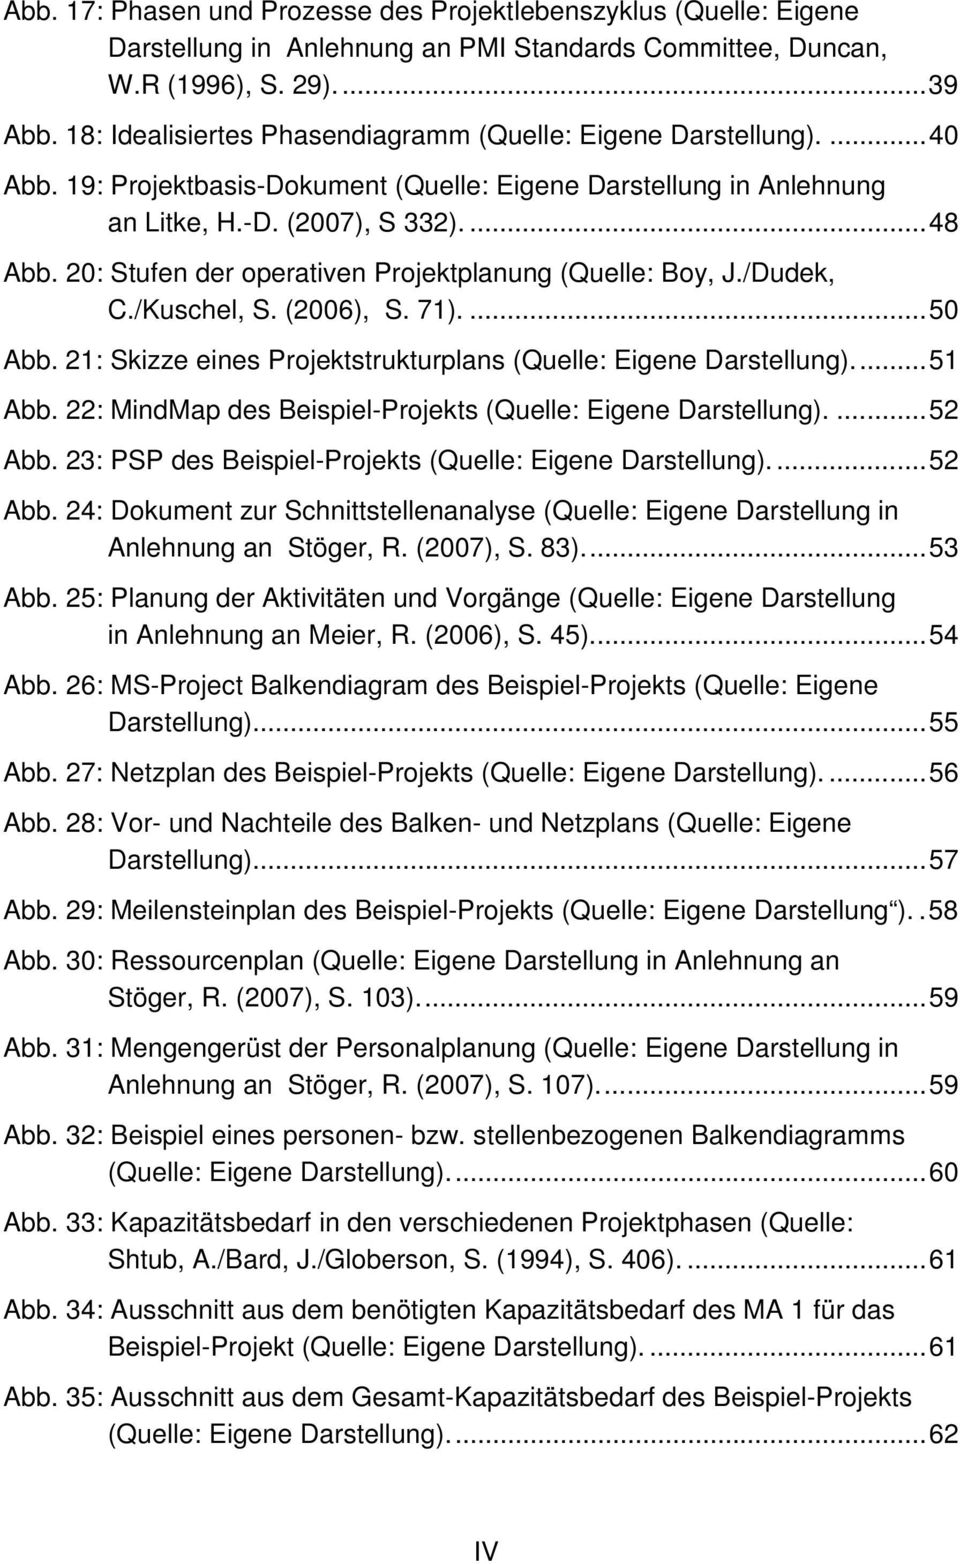 20: Stufen der operativen Projektplanung (Quelle: Boy, J./Dudek, C./Kuschel, S. (2006), S. 71).... 50 Abb. 21: Skizze eines Projektstrukturplans (Quelle: Eigene Darstellung).... 51 Abb.